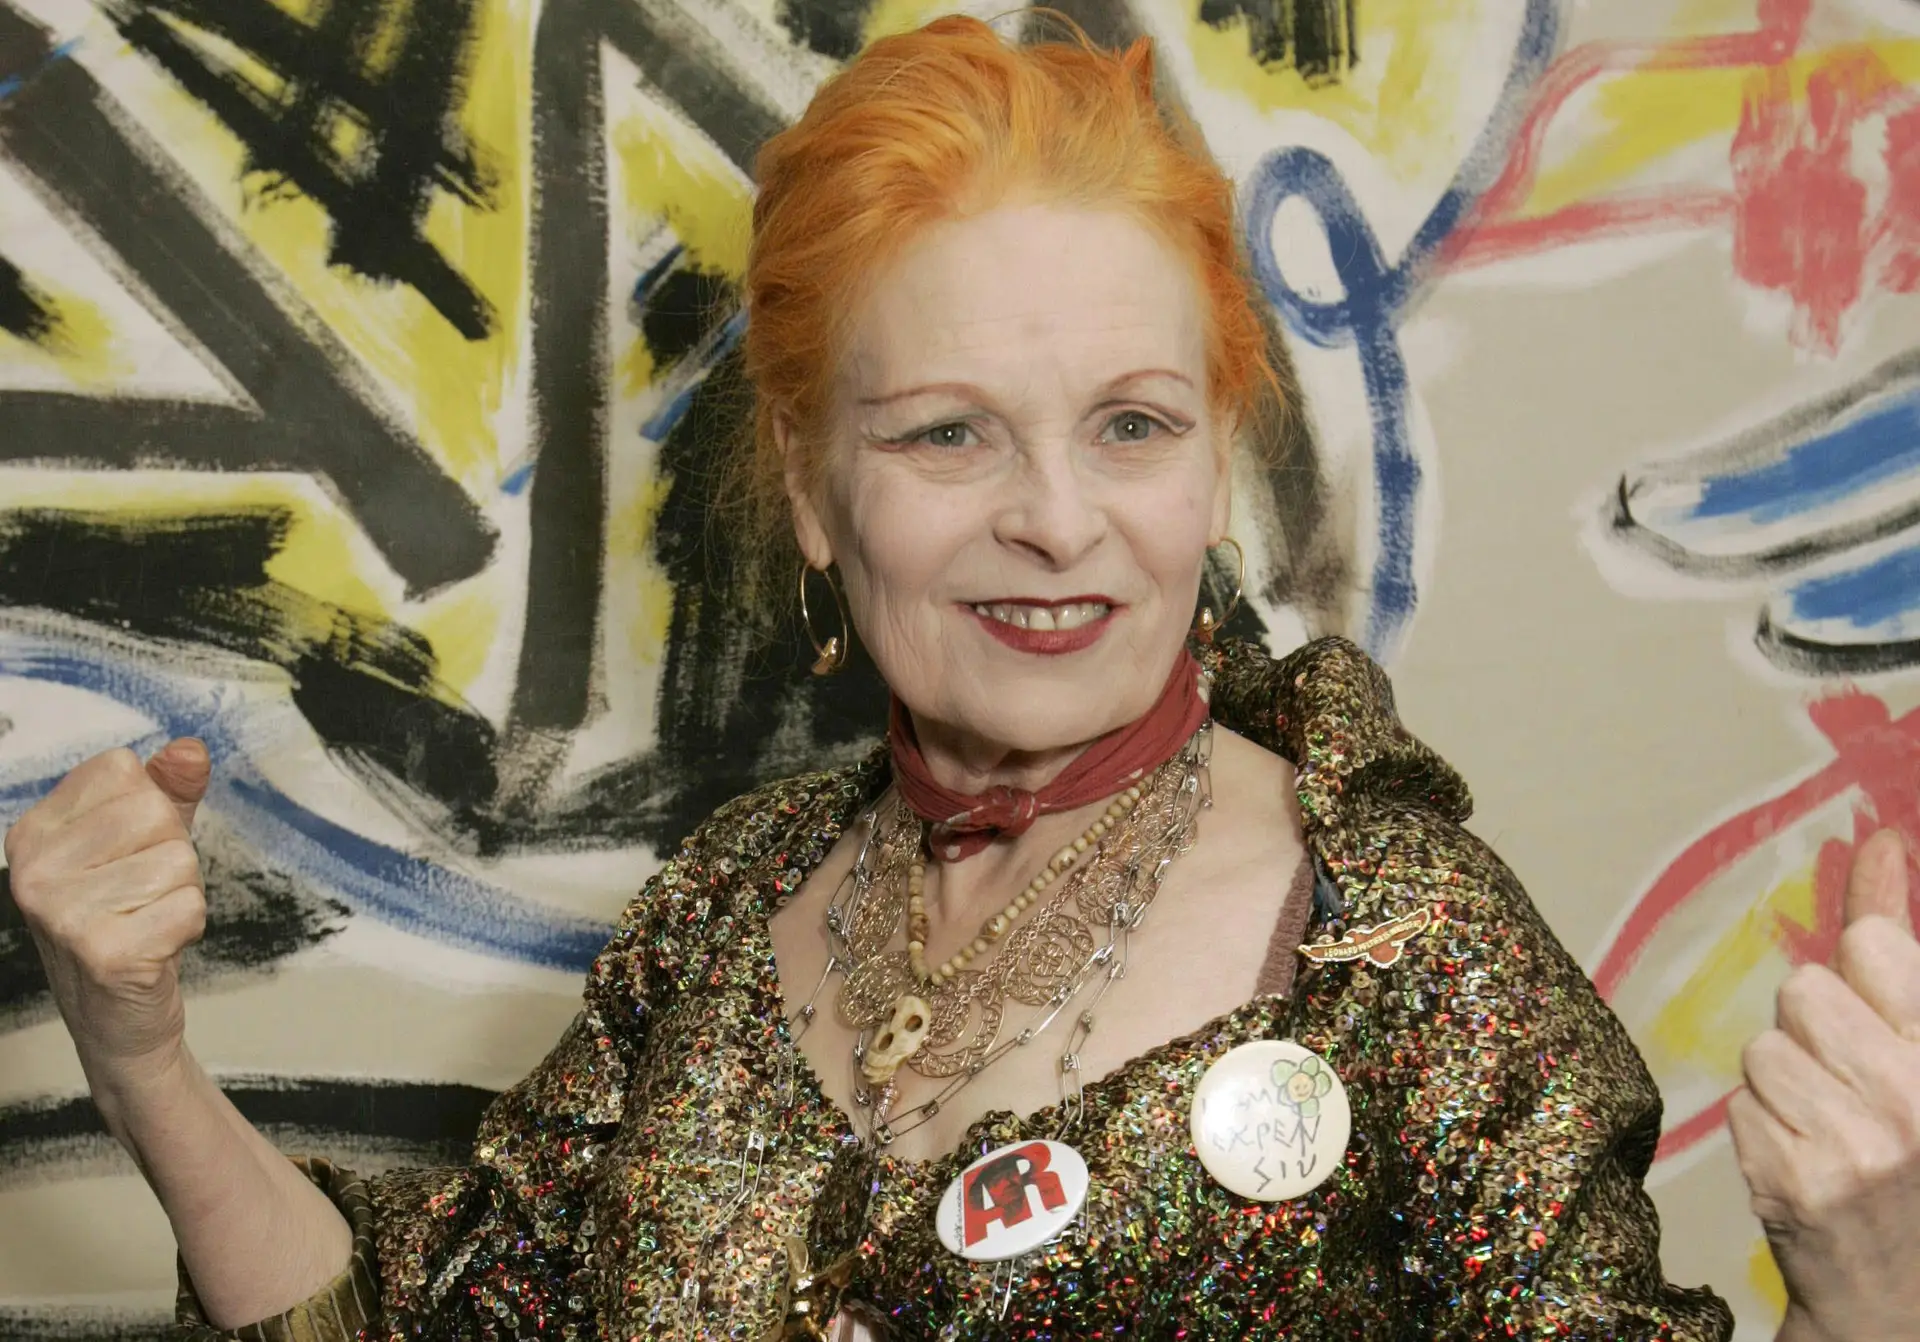 Morreu a minha musa” De Mísia a Boy George, as reações à morte de Vivienne Westwood, a mulher que vestiu os Sex Pistols foto